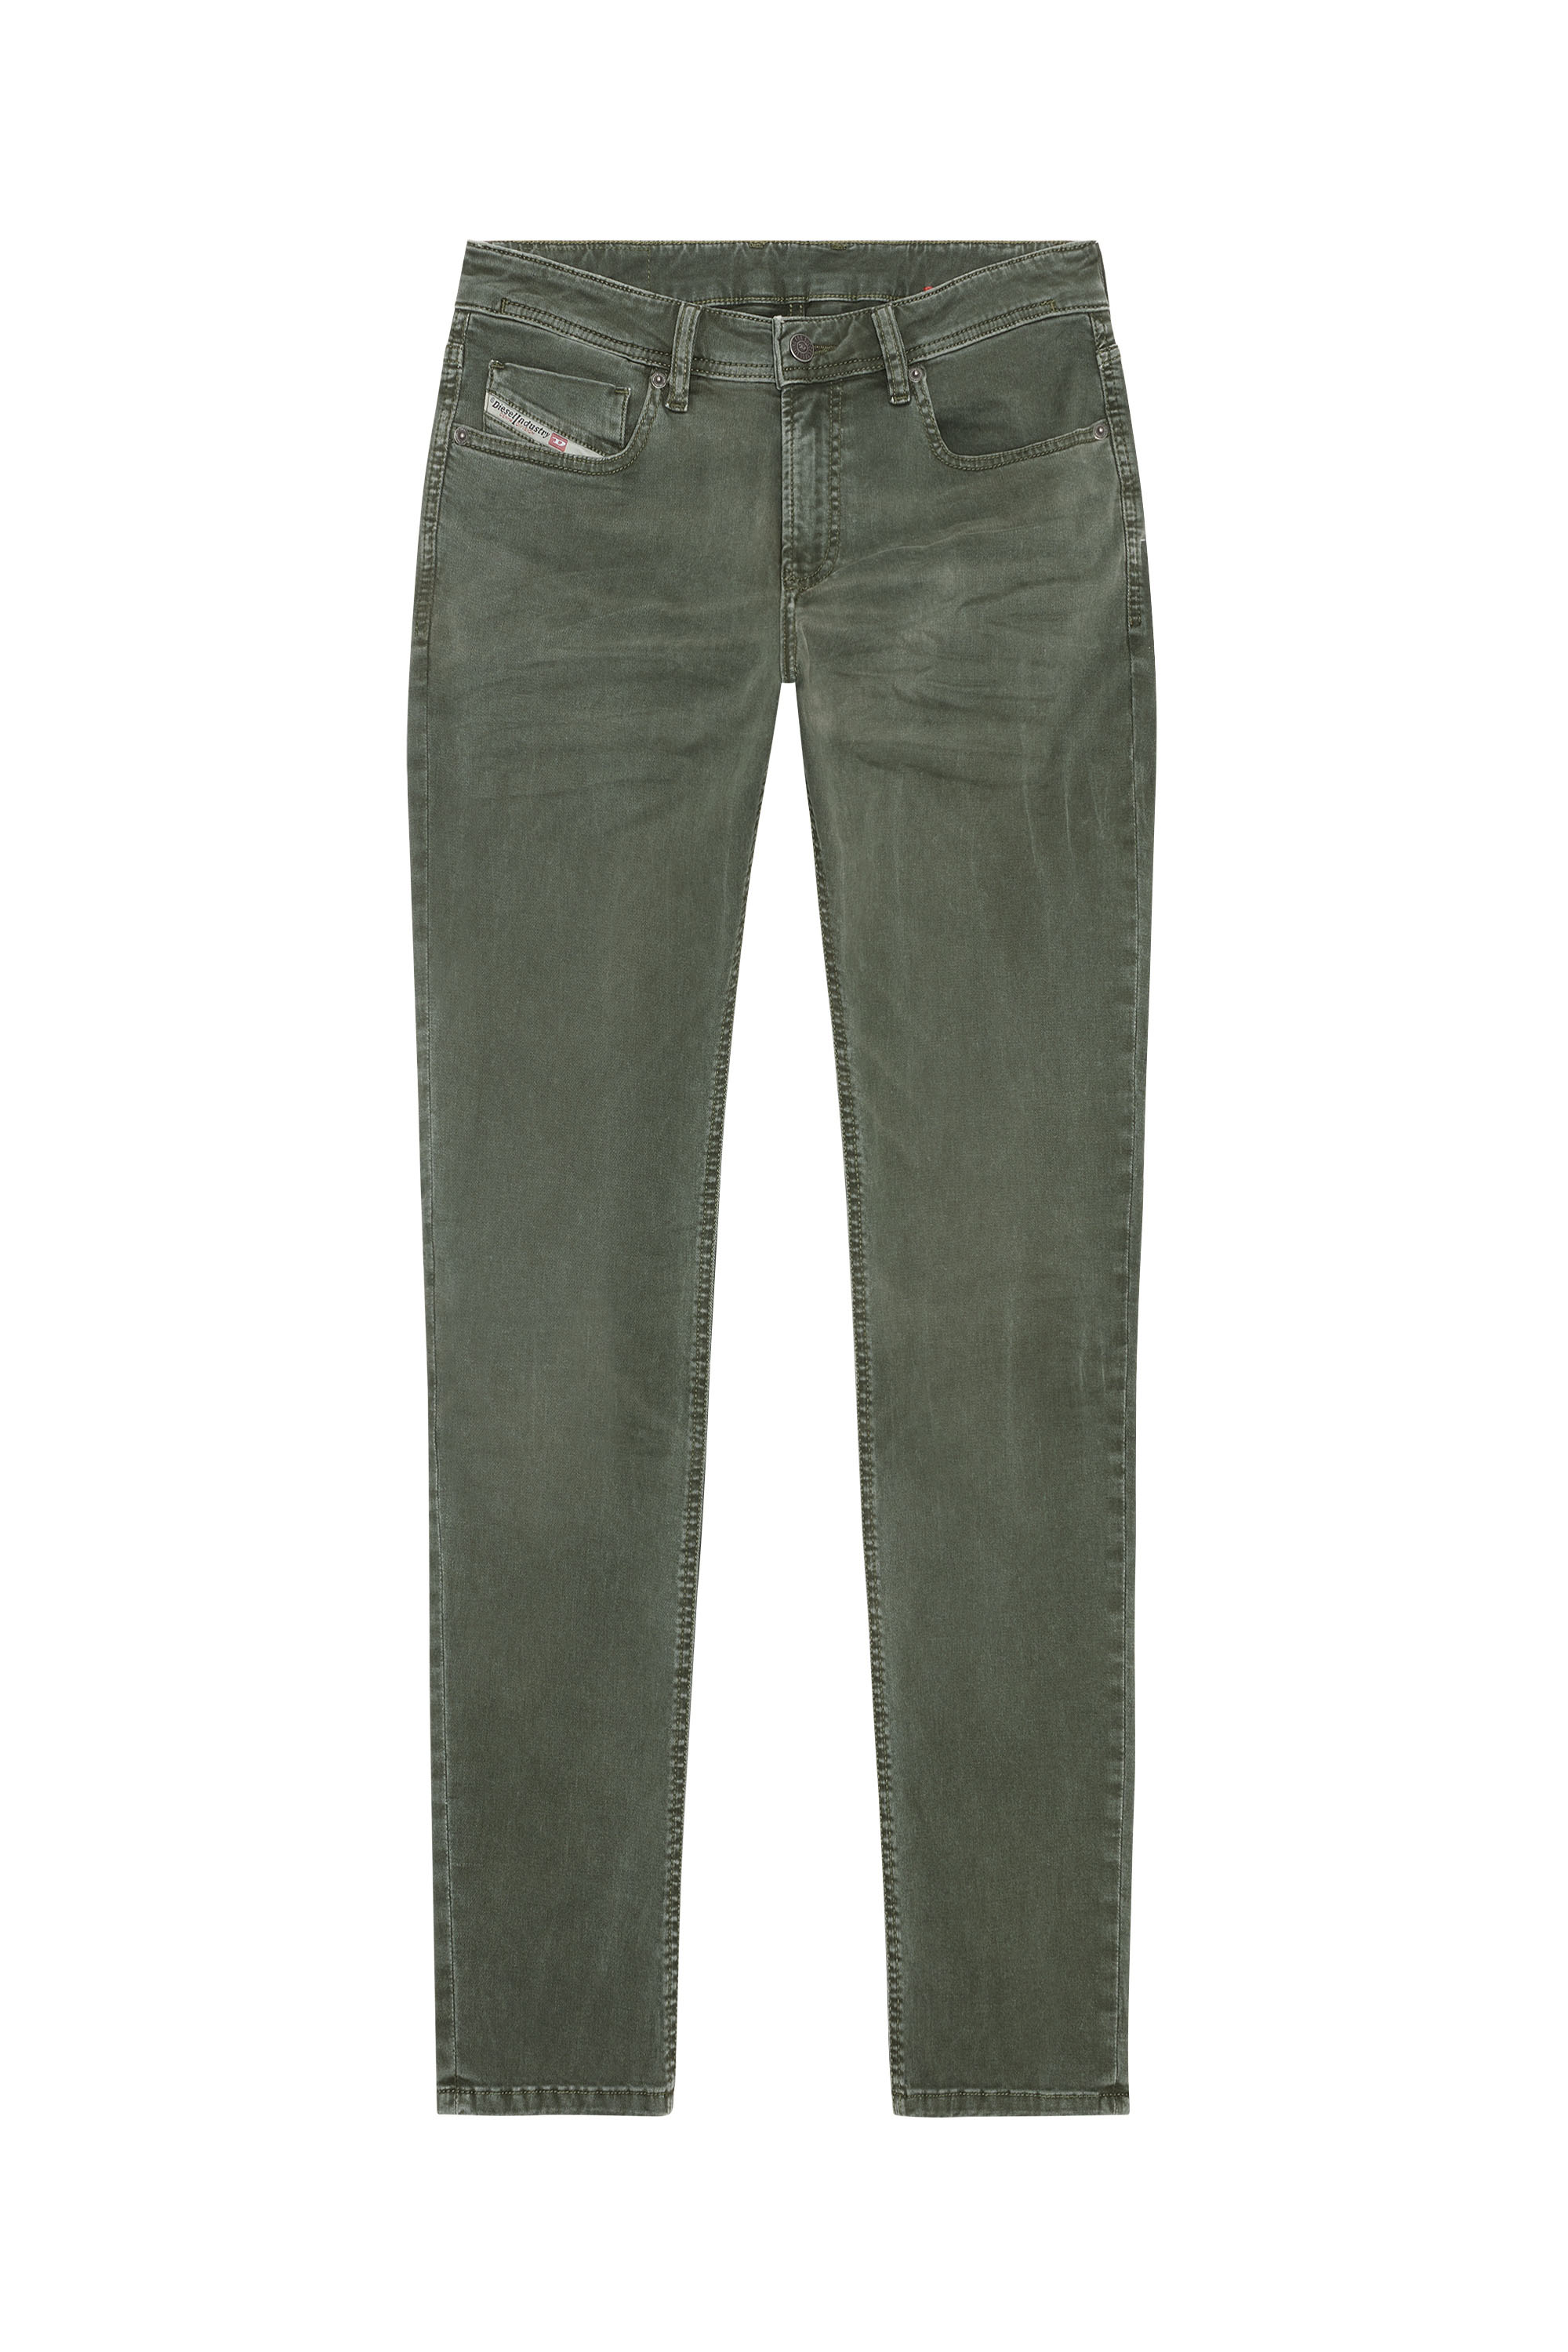 Diesel - Skinny Jeans 1979 Sleenker 0ENAK, 5FX - Image 5